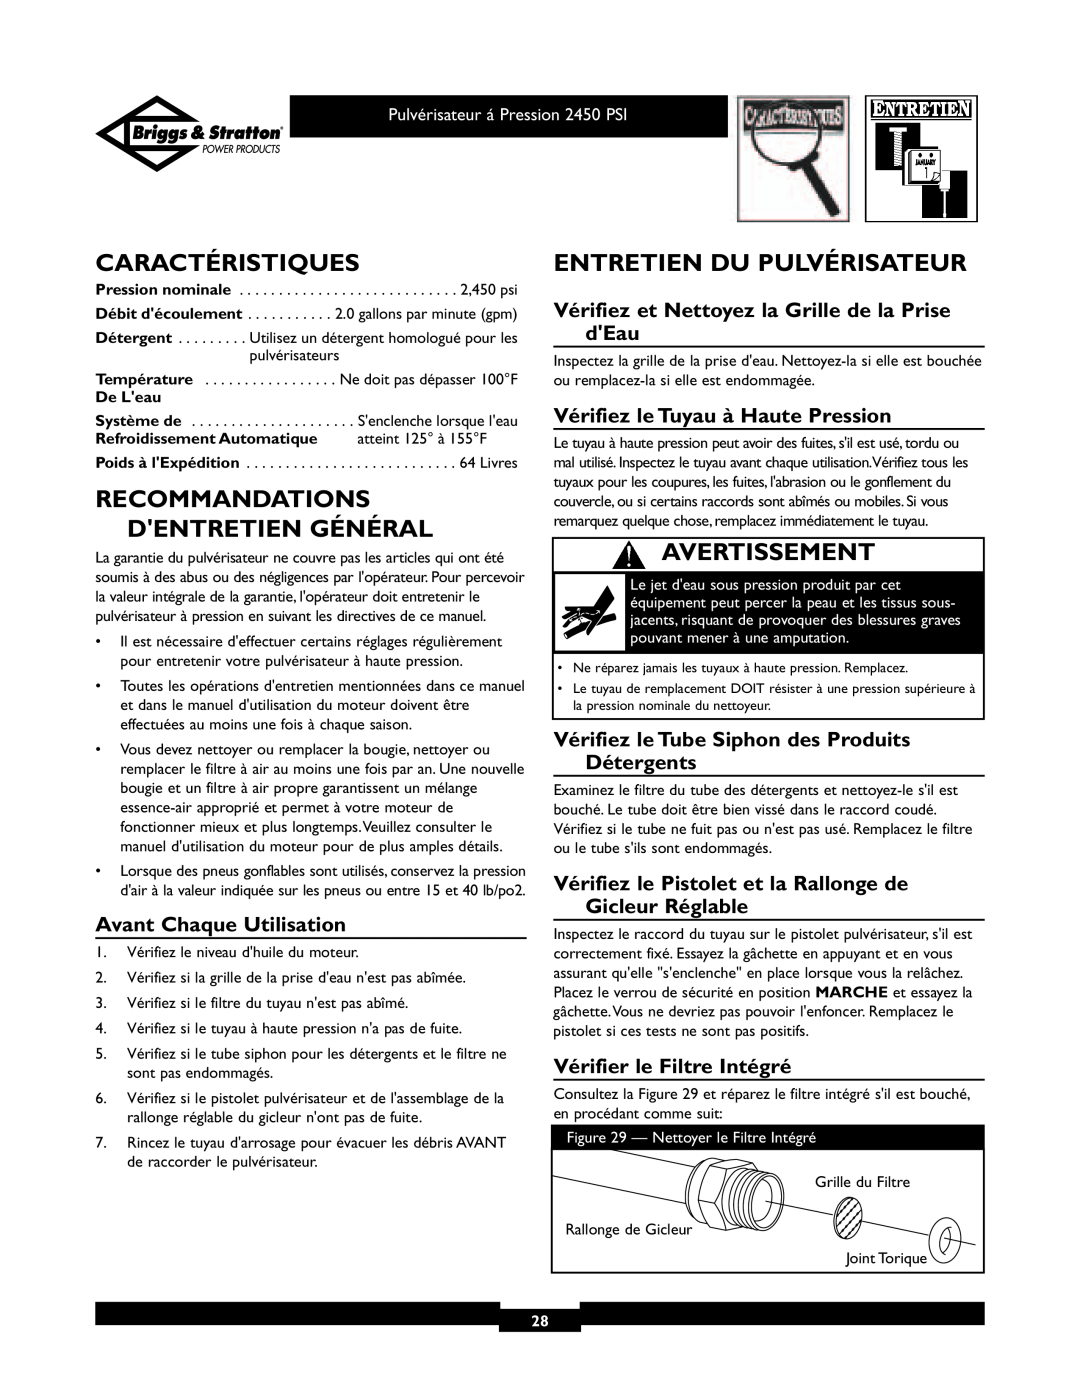 Briggs & Stratton 020219 Caractéristiques, Entretien Du Pulvérisateur, Recommandations Dentretien Général, Avertissement 